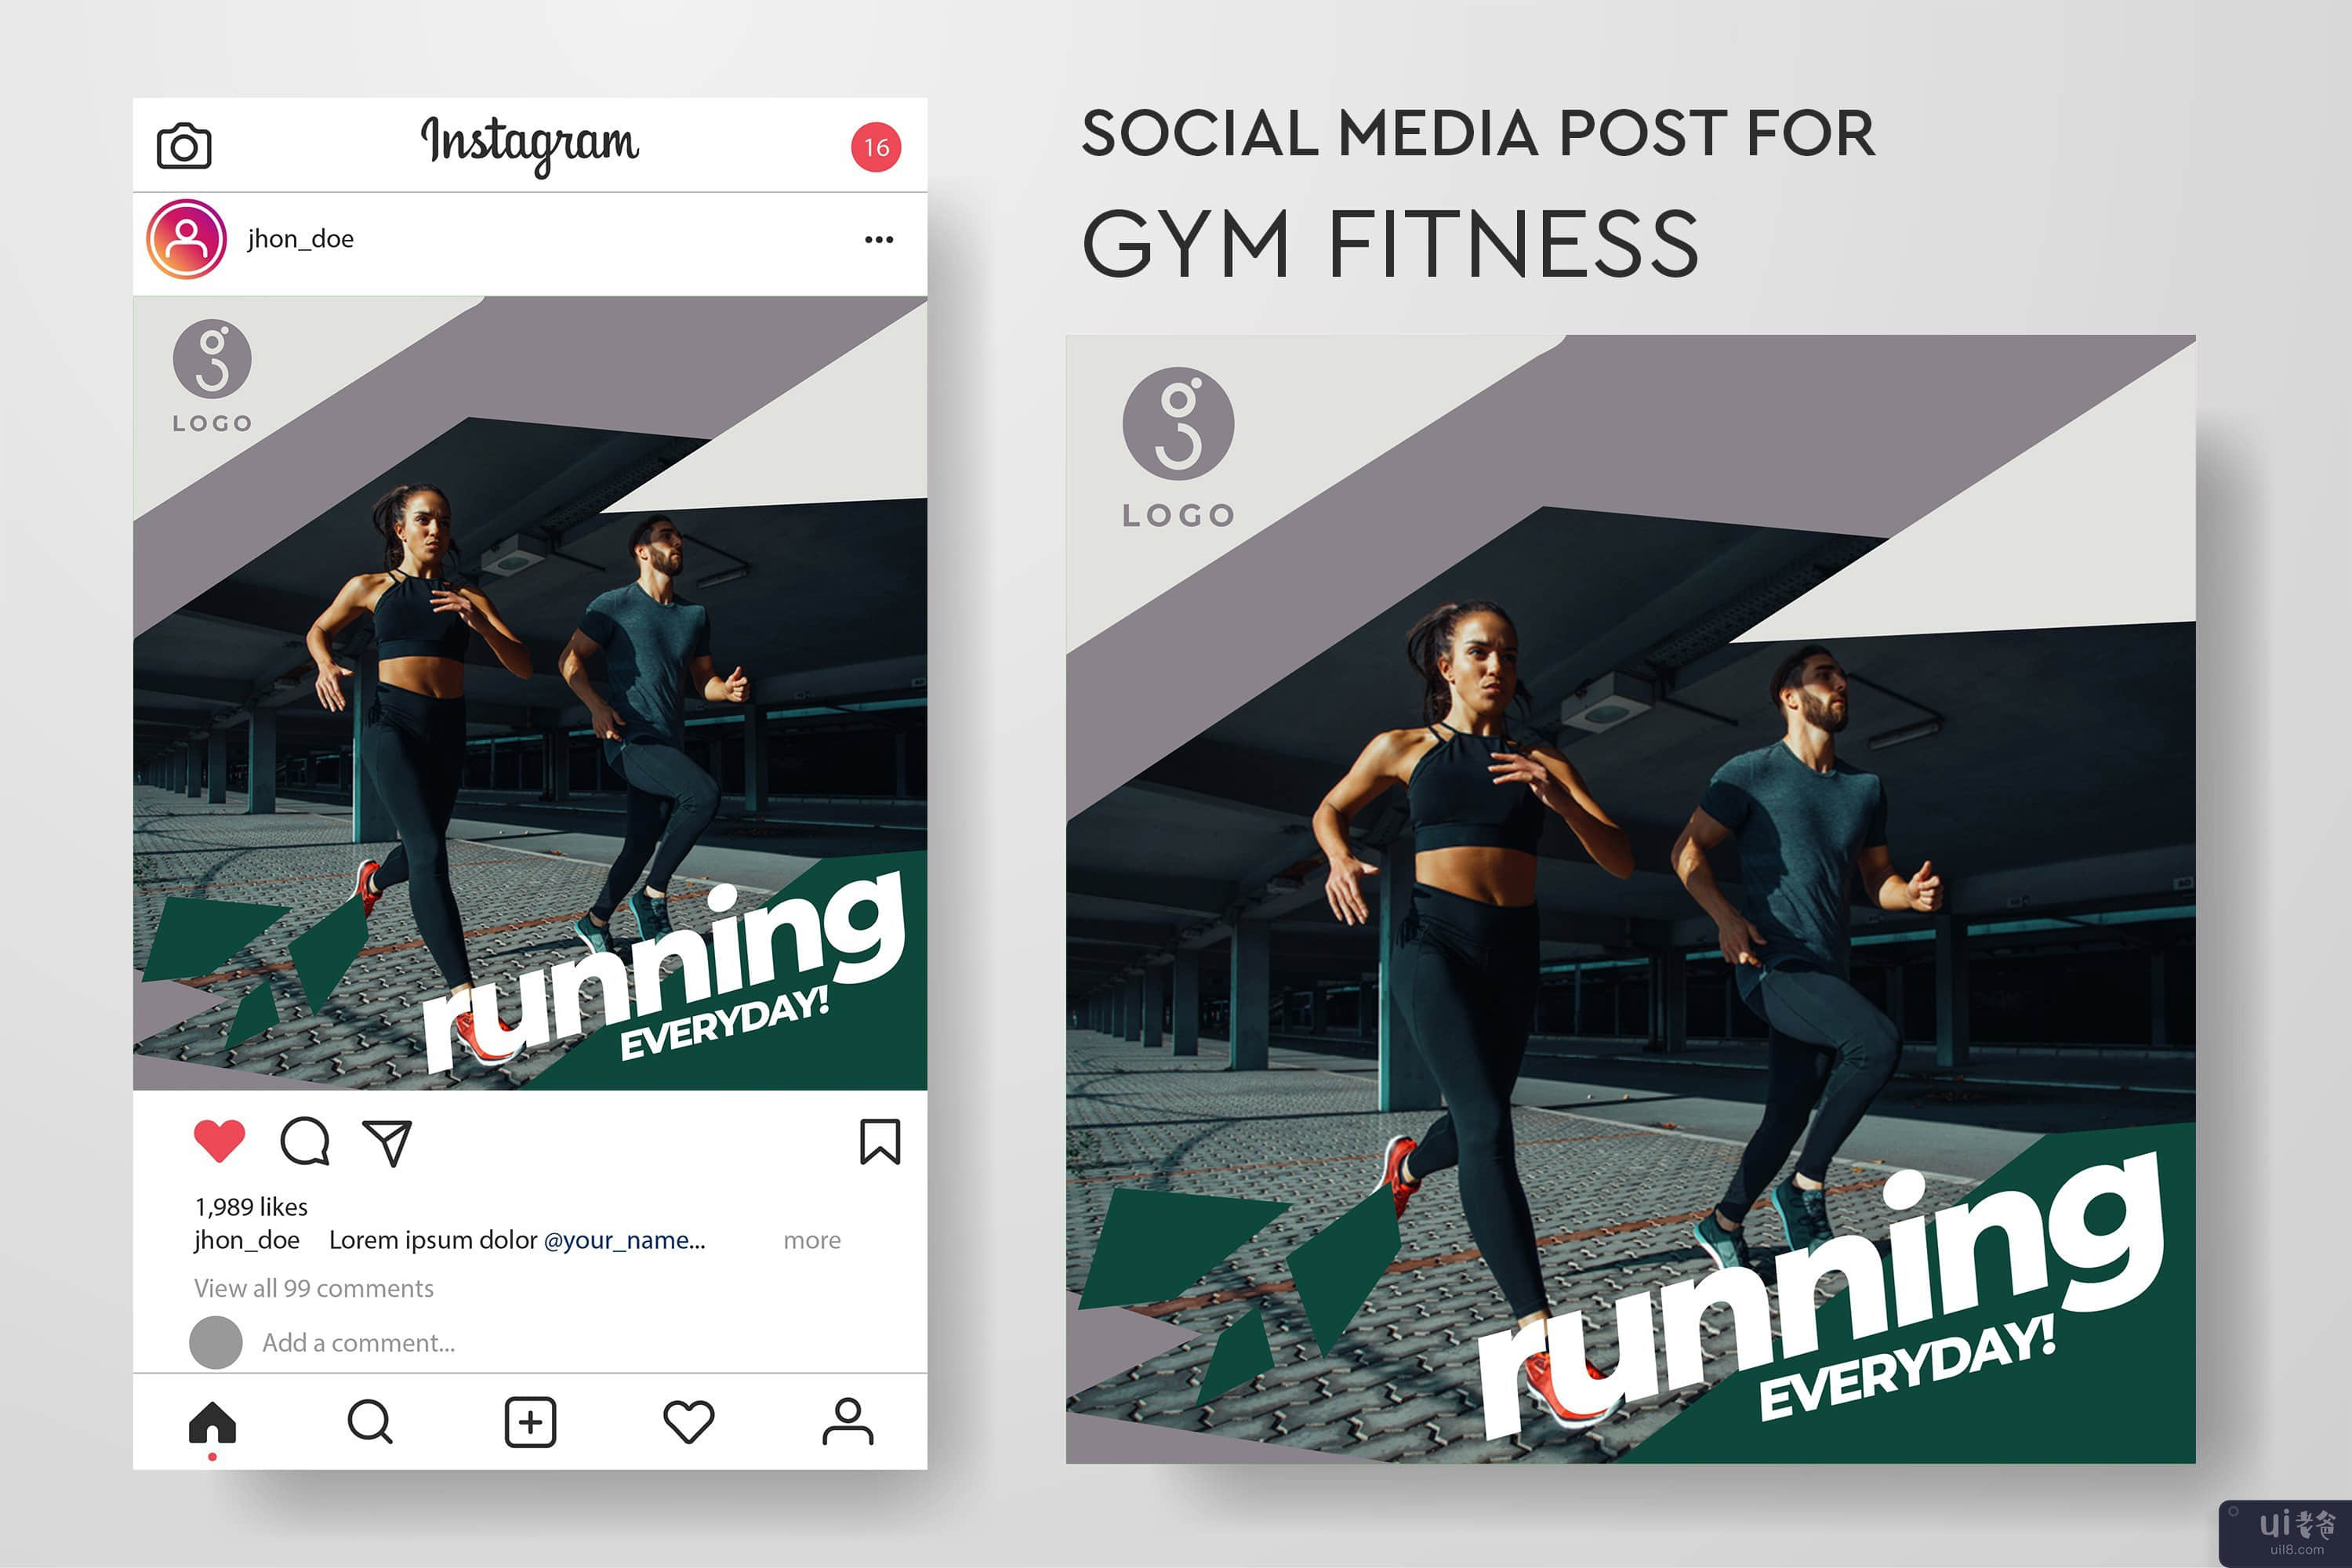 健身房健身的社交媒体帖子模板集合(Social media post template collection for gym fitness)插图7